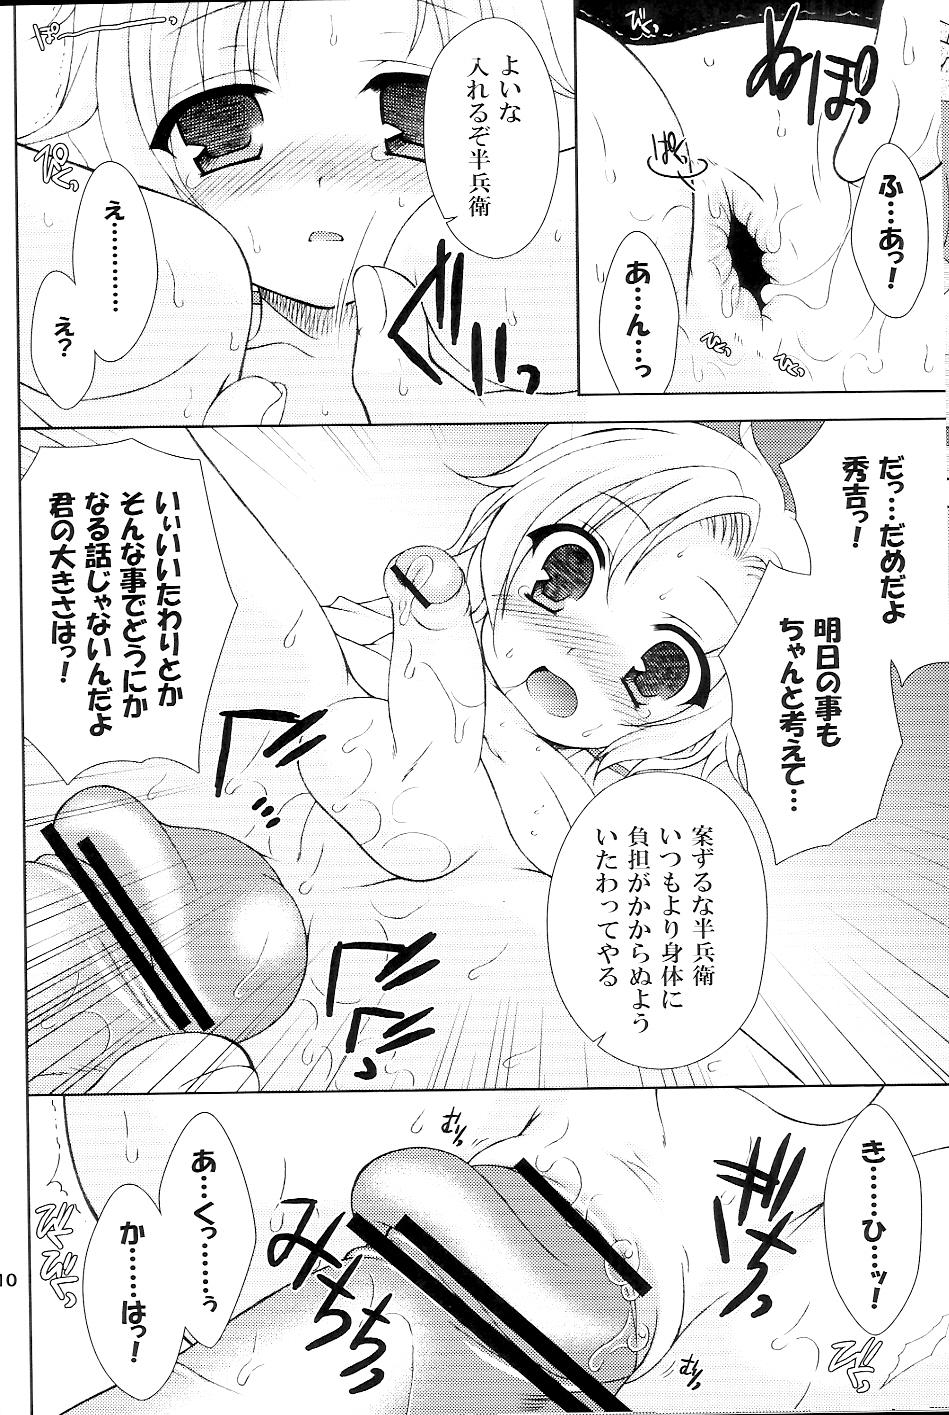 8teen Sairoku March - Sengoku basara Mms - Page 9